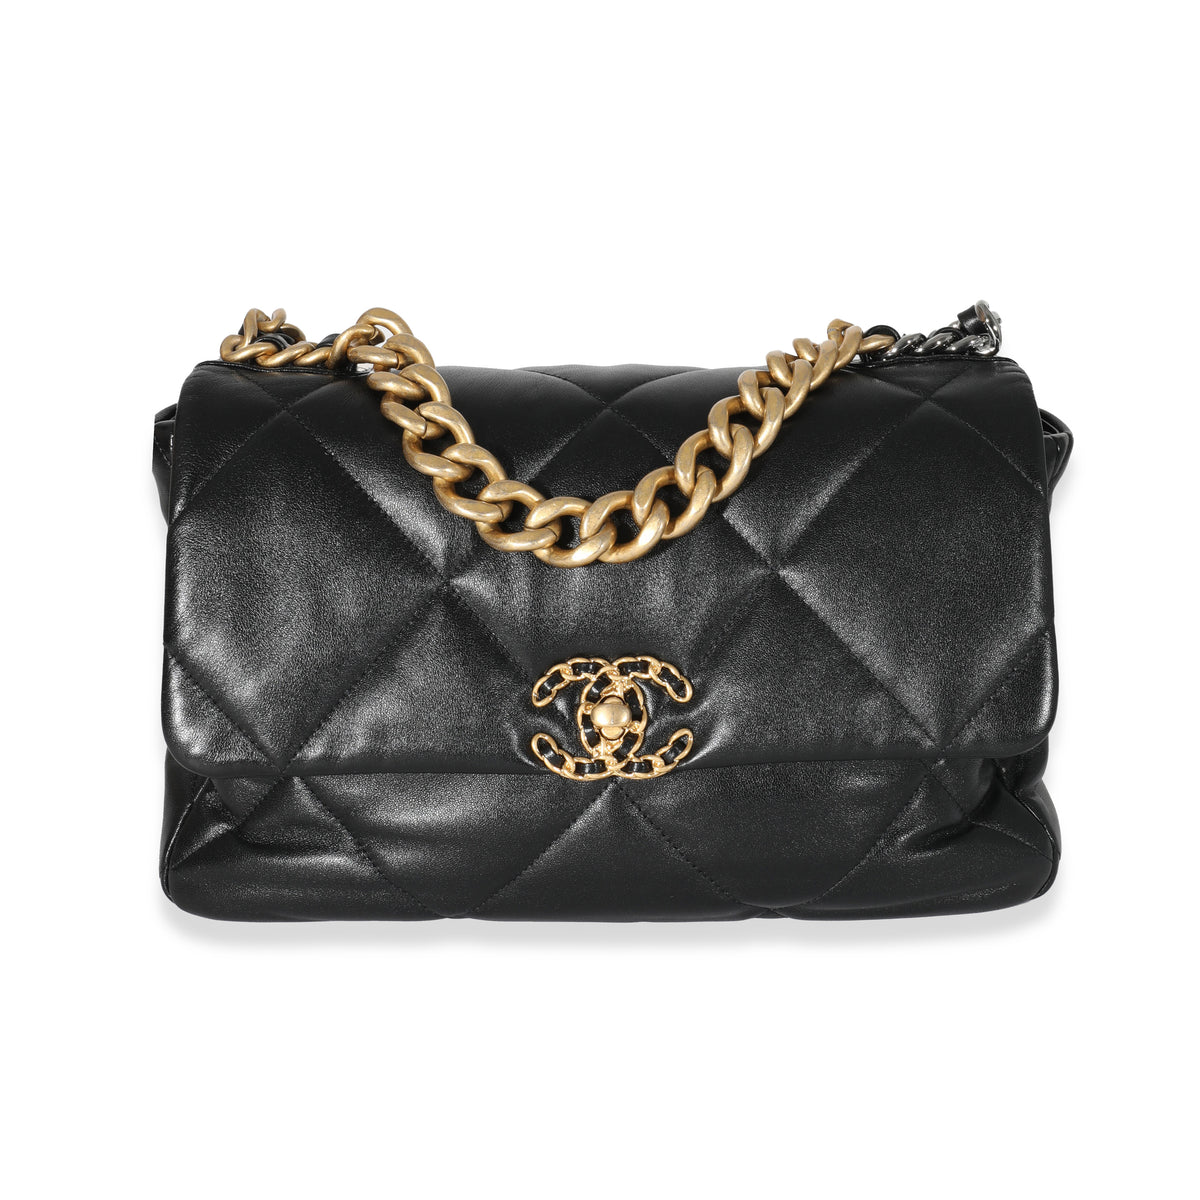 Chanel Black Goatskin Small Chanel 19 Flap Bag, myGemma